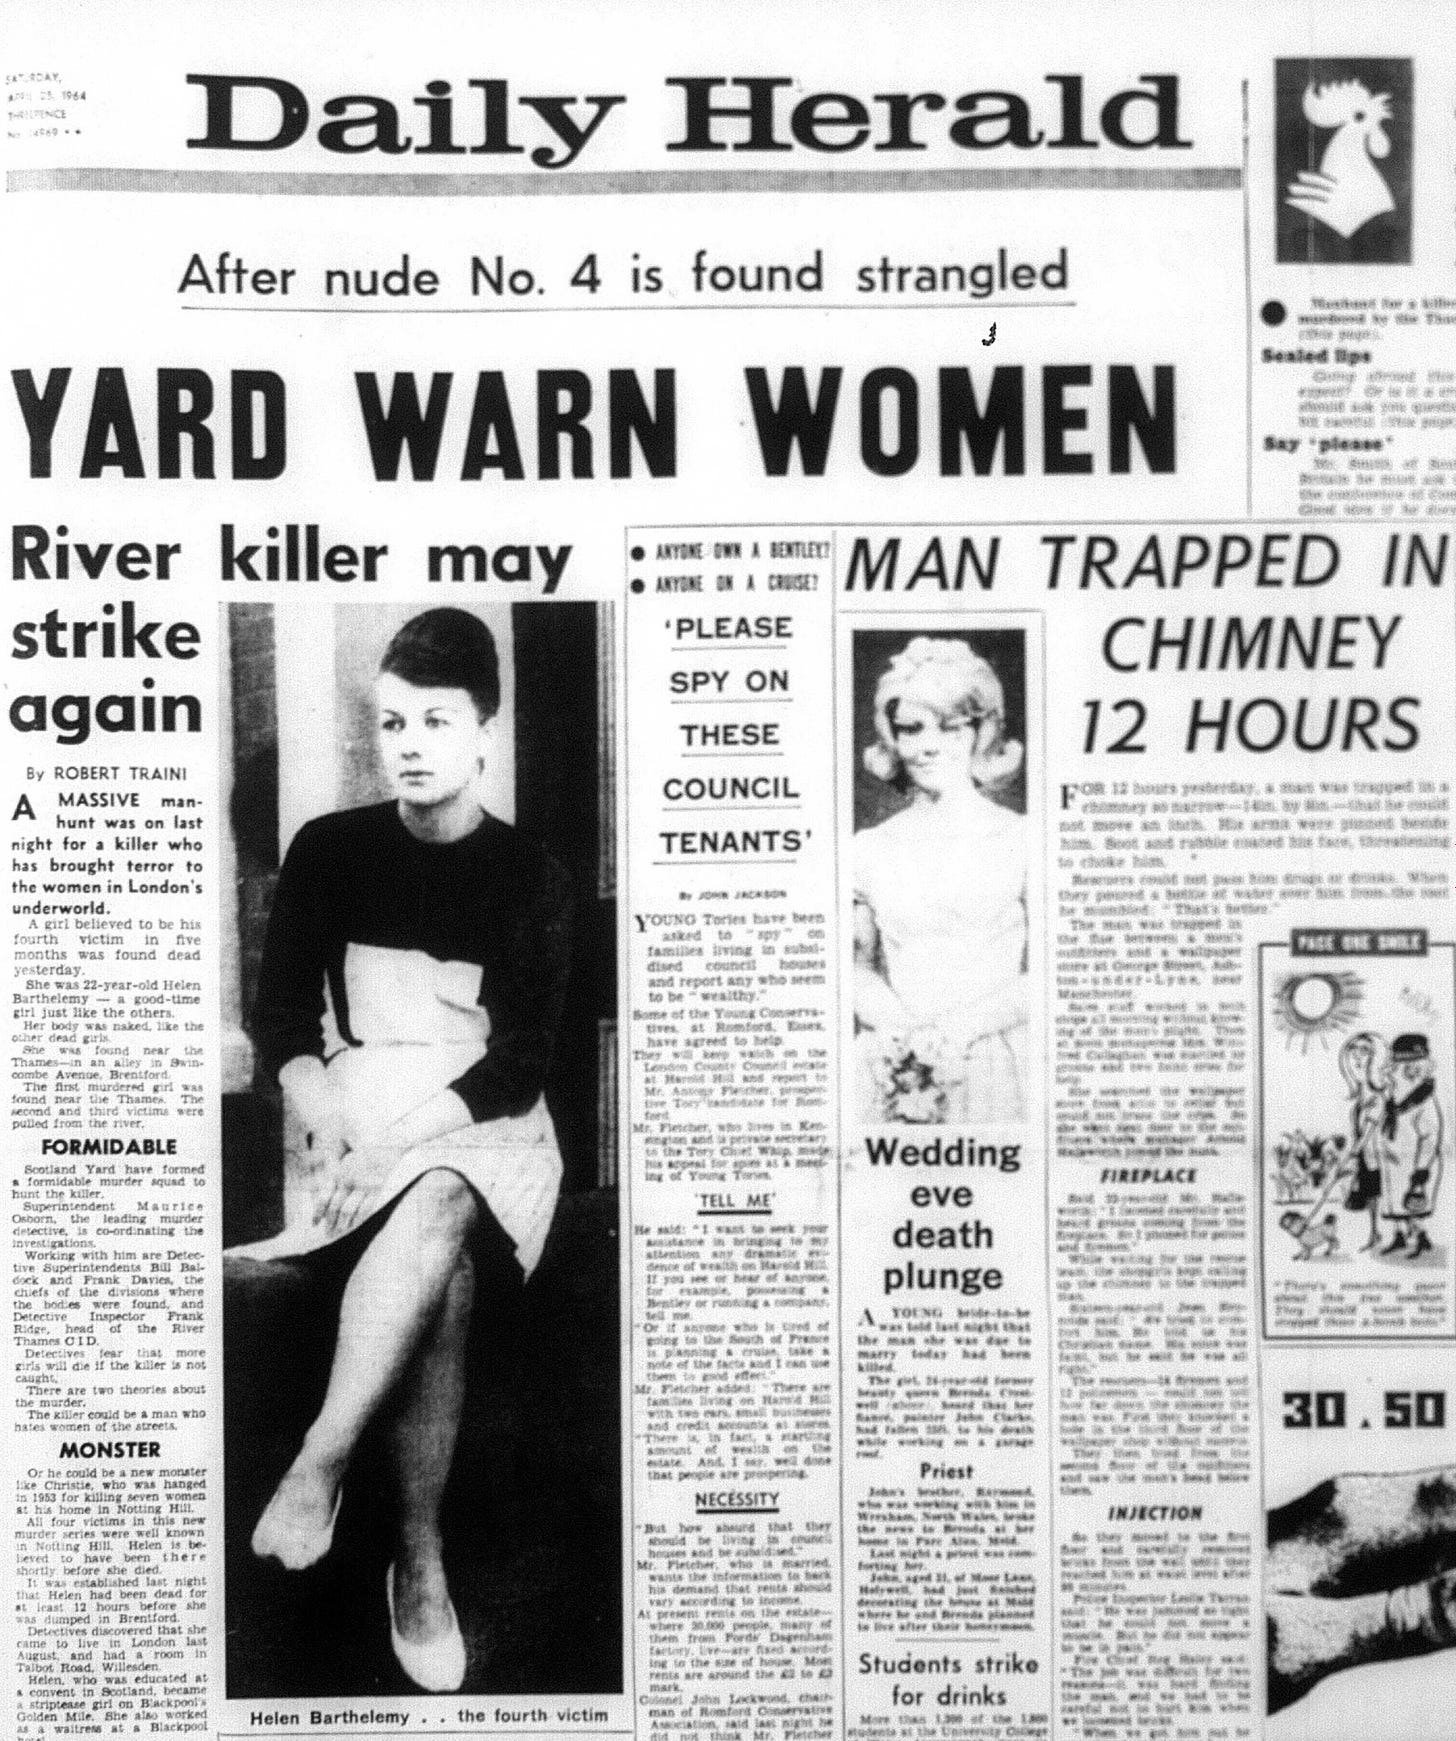 Daily Herald on Barthelemy murder 1964